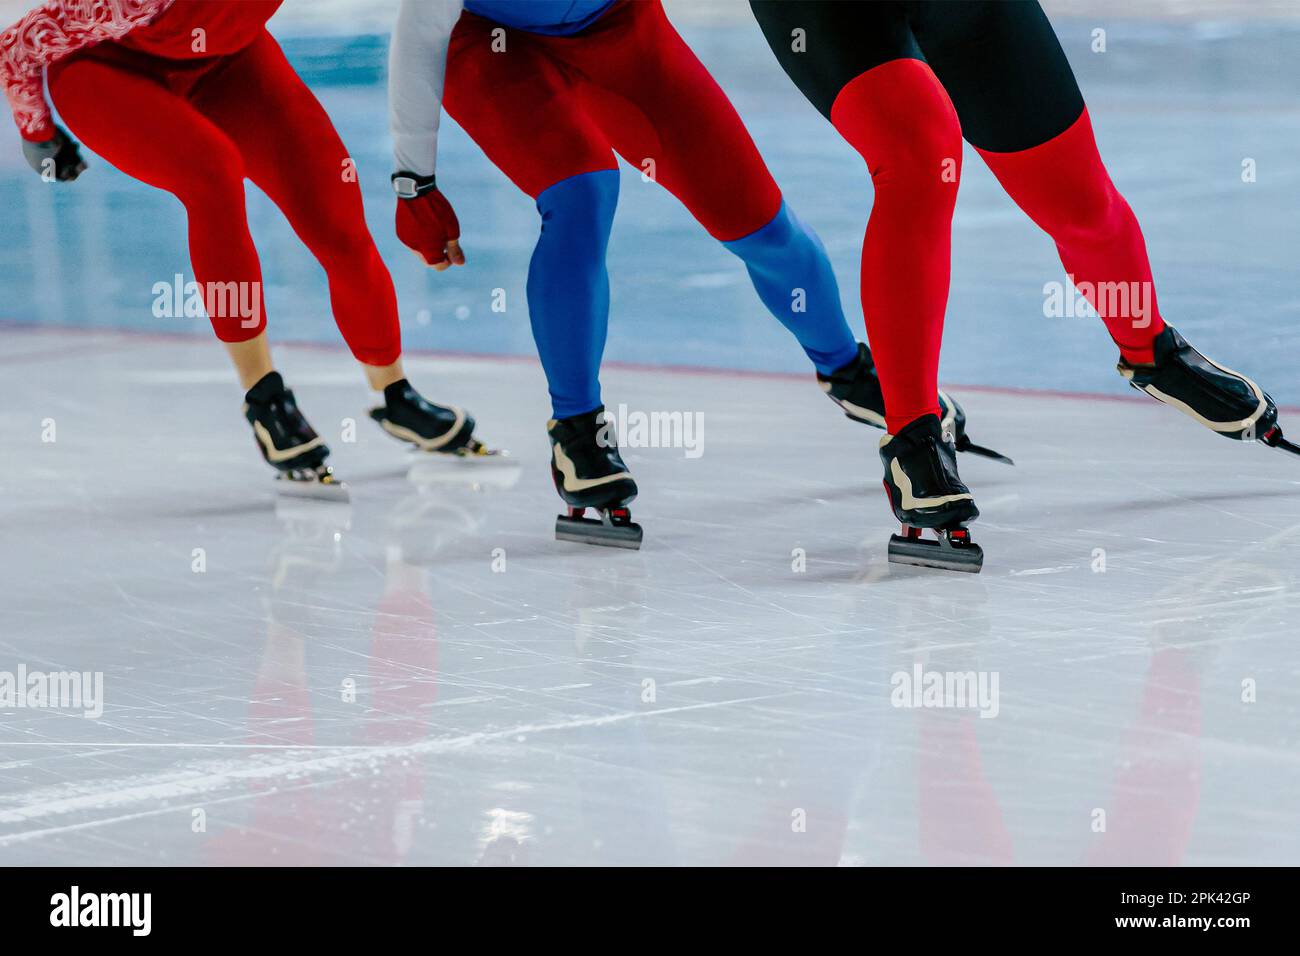 tre skater maschi corrono insieme gara di pattinaggio di velocità warm-up, giochi di sport invernali Foto Stock